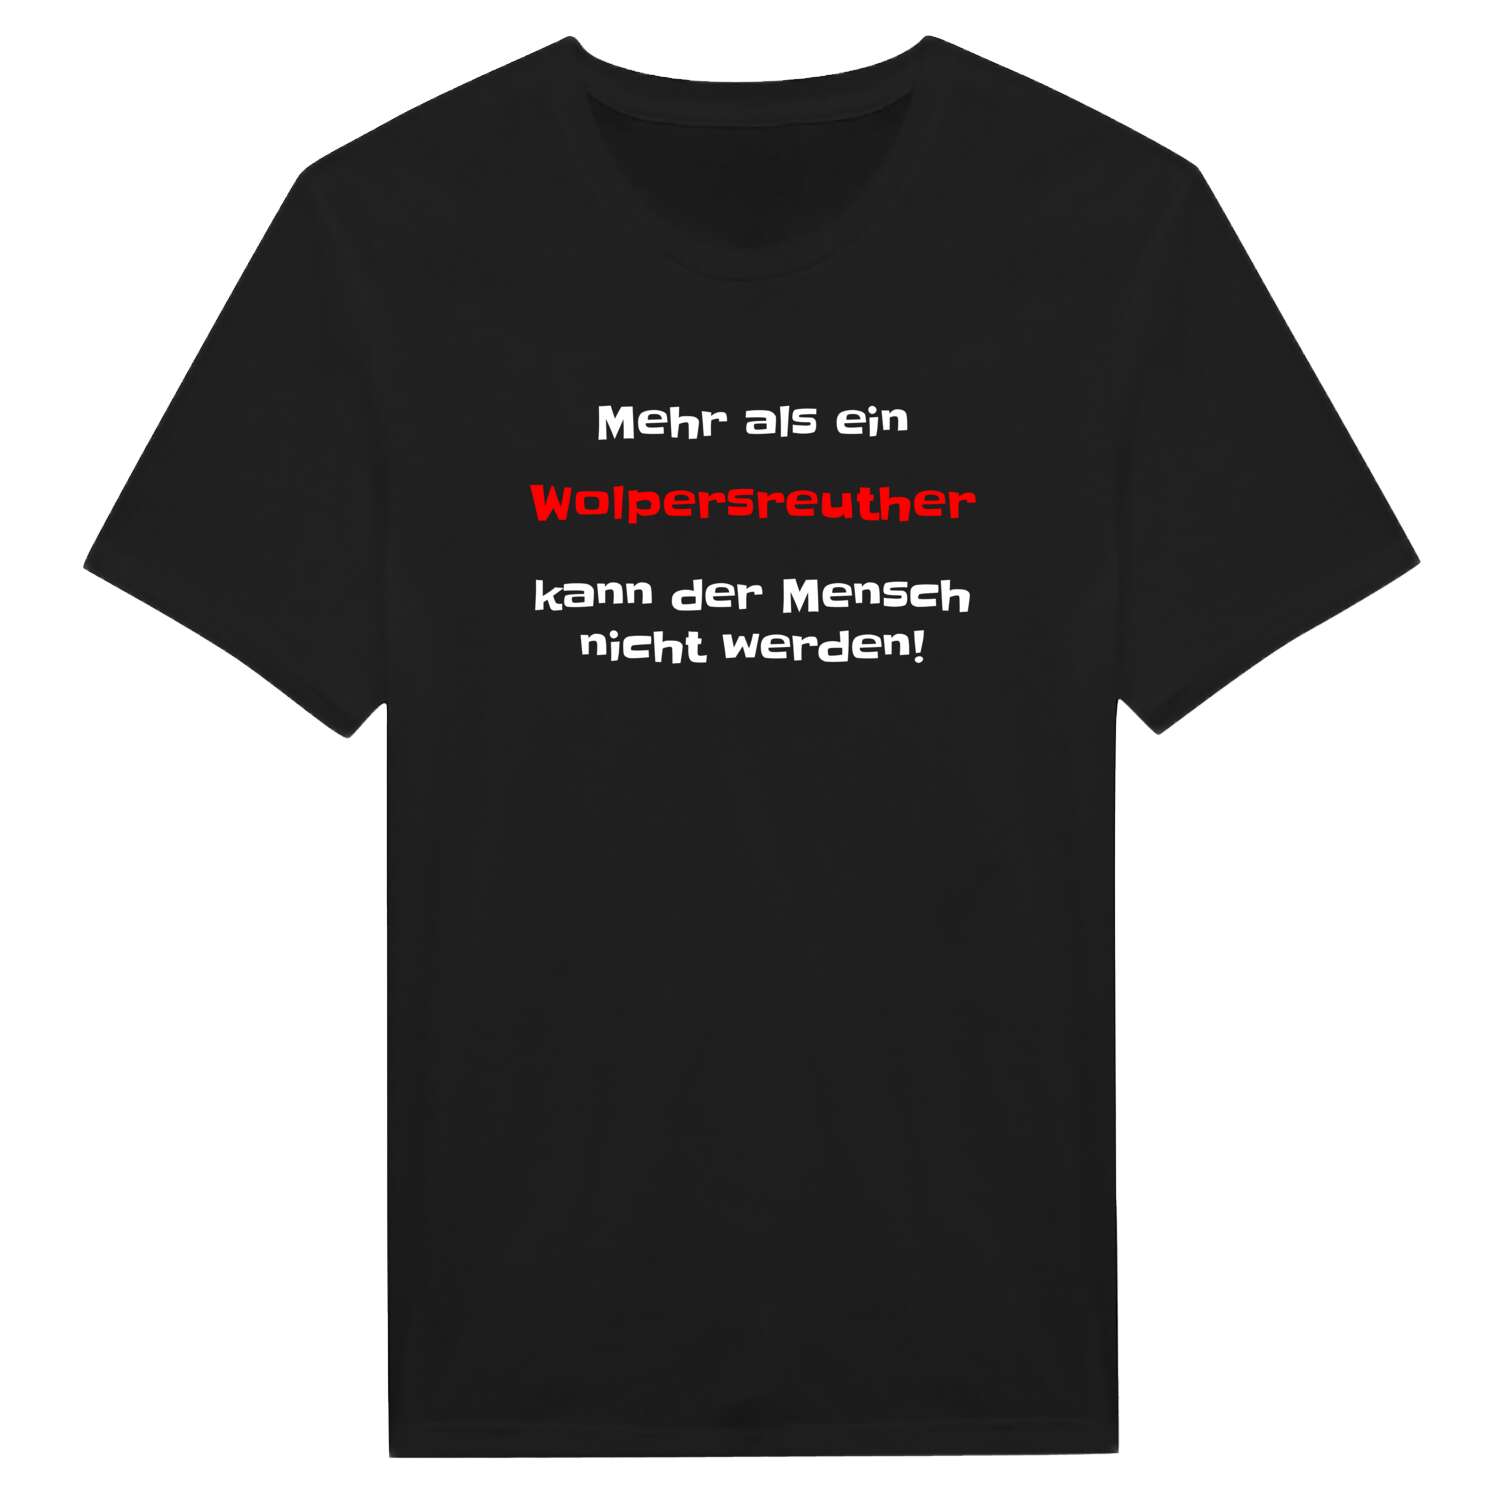 Wolpersreuth T-Shirt »Mehr als ein«